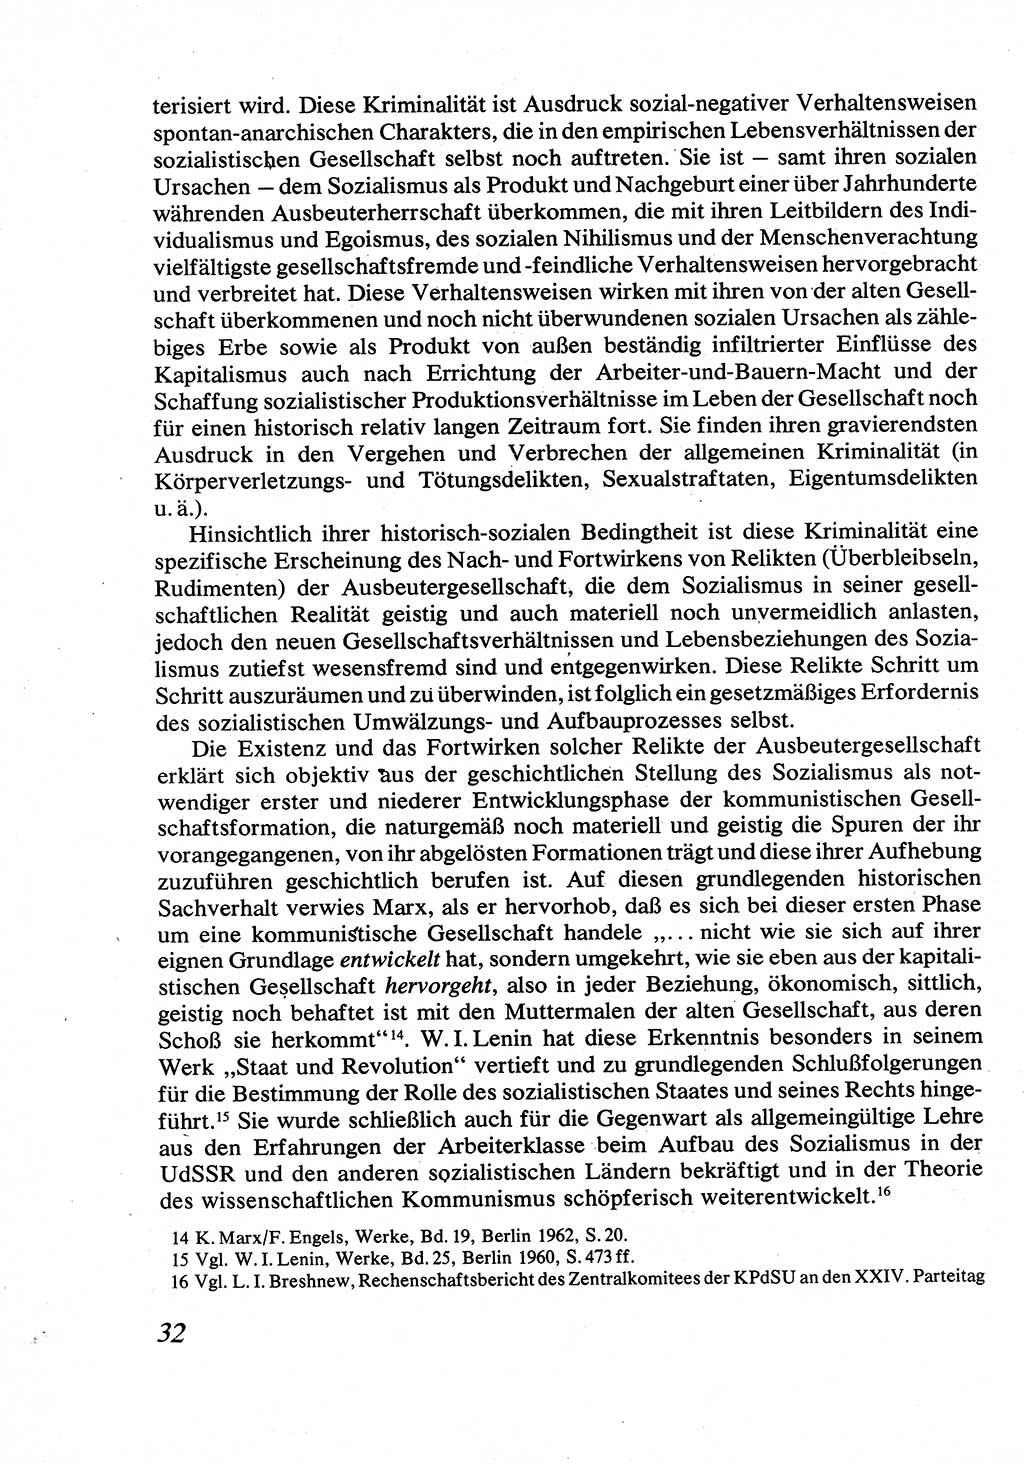 Strafrecht [Deutsche Demokratische Republik (DDR)], Allgemeiner Teil, Lehrbuch 1976, Seite 32 (Strafr. DDR AT Lb. 1976, S. 32)